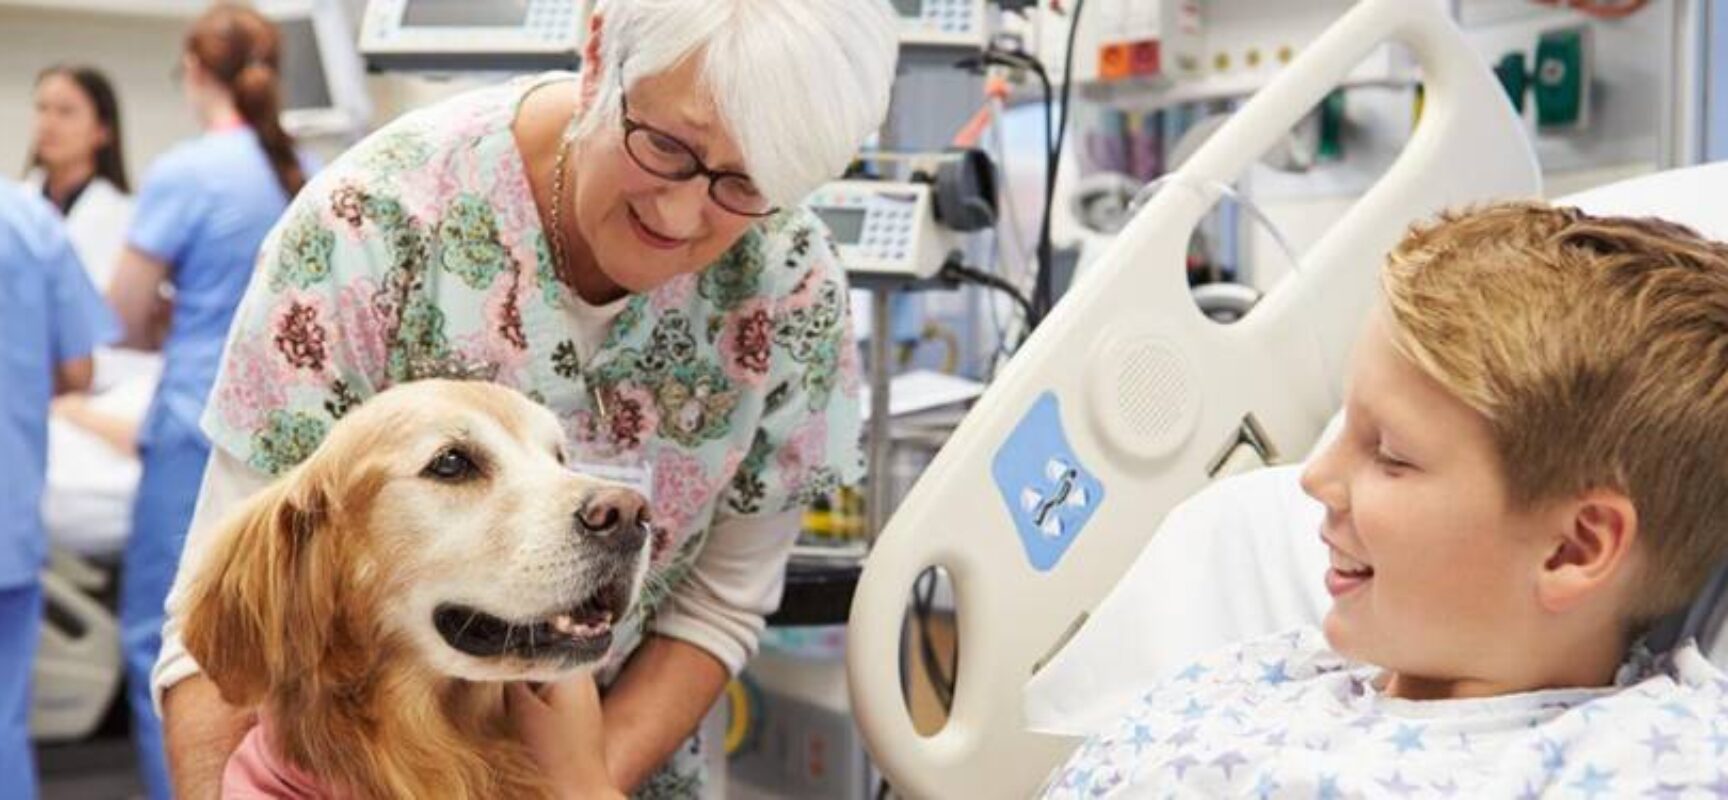 Projeto permite visita de animais a pacientes internados em hospitais